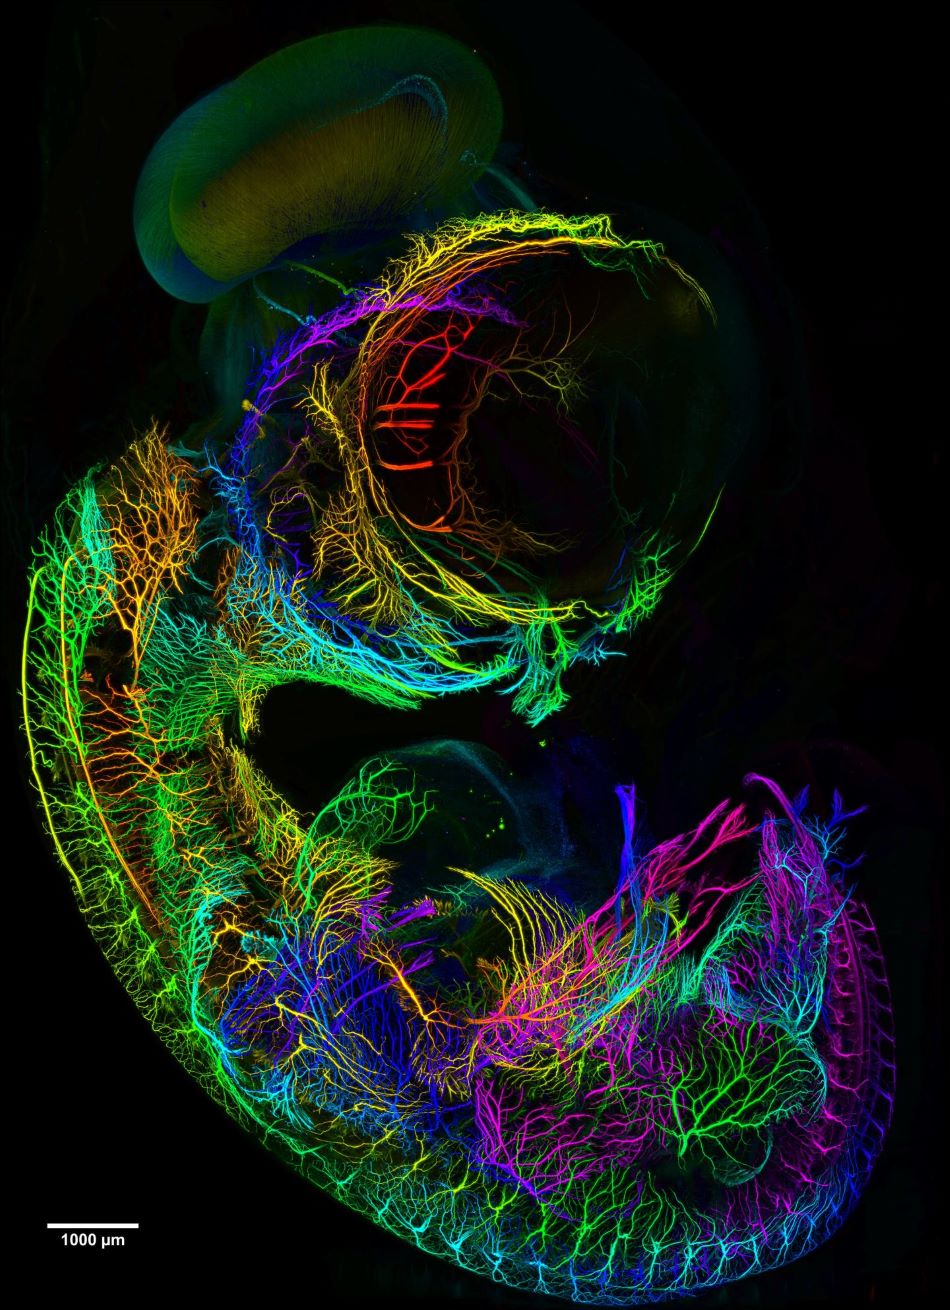 Zobrazení mozku sedmidenního kuřecího embrya mikroskopem mesoSPIM, obr. mesospim.org.